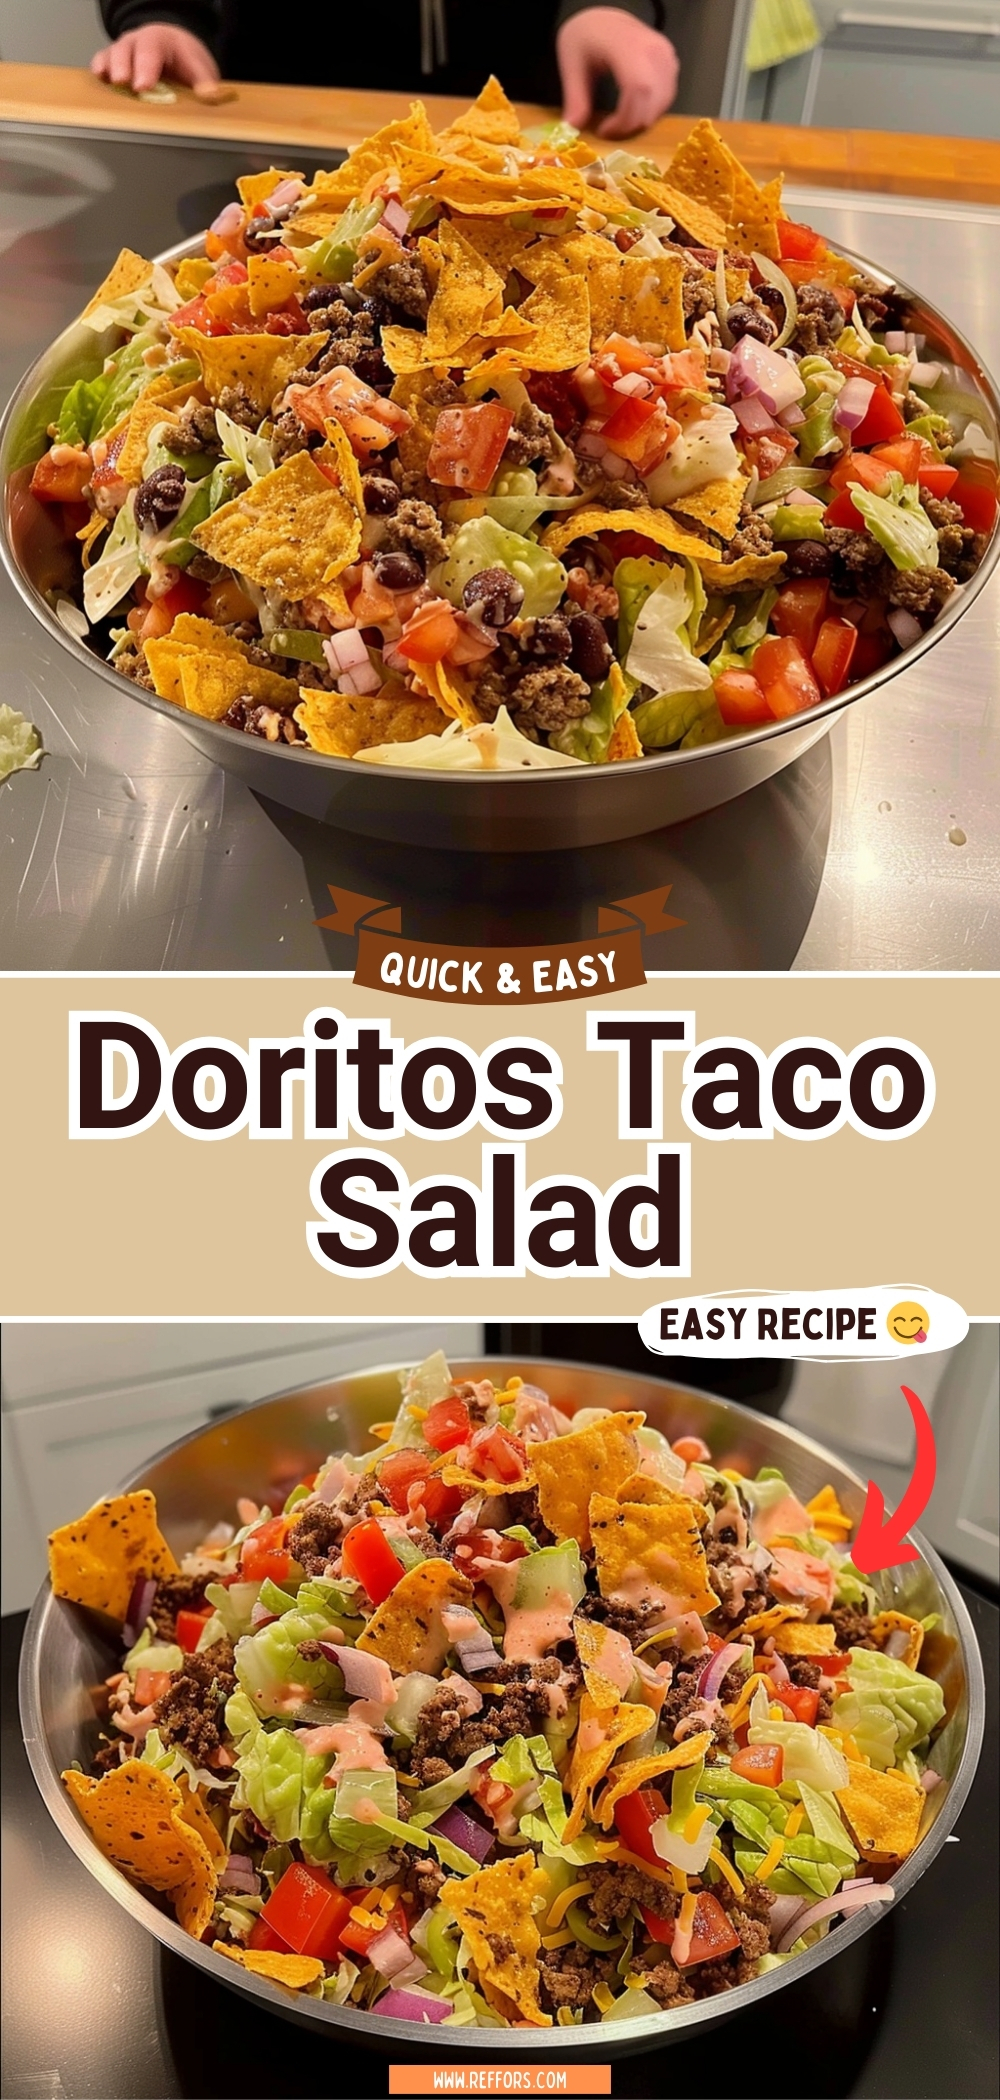 Easy Doritos Taco Salad